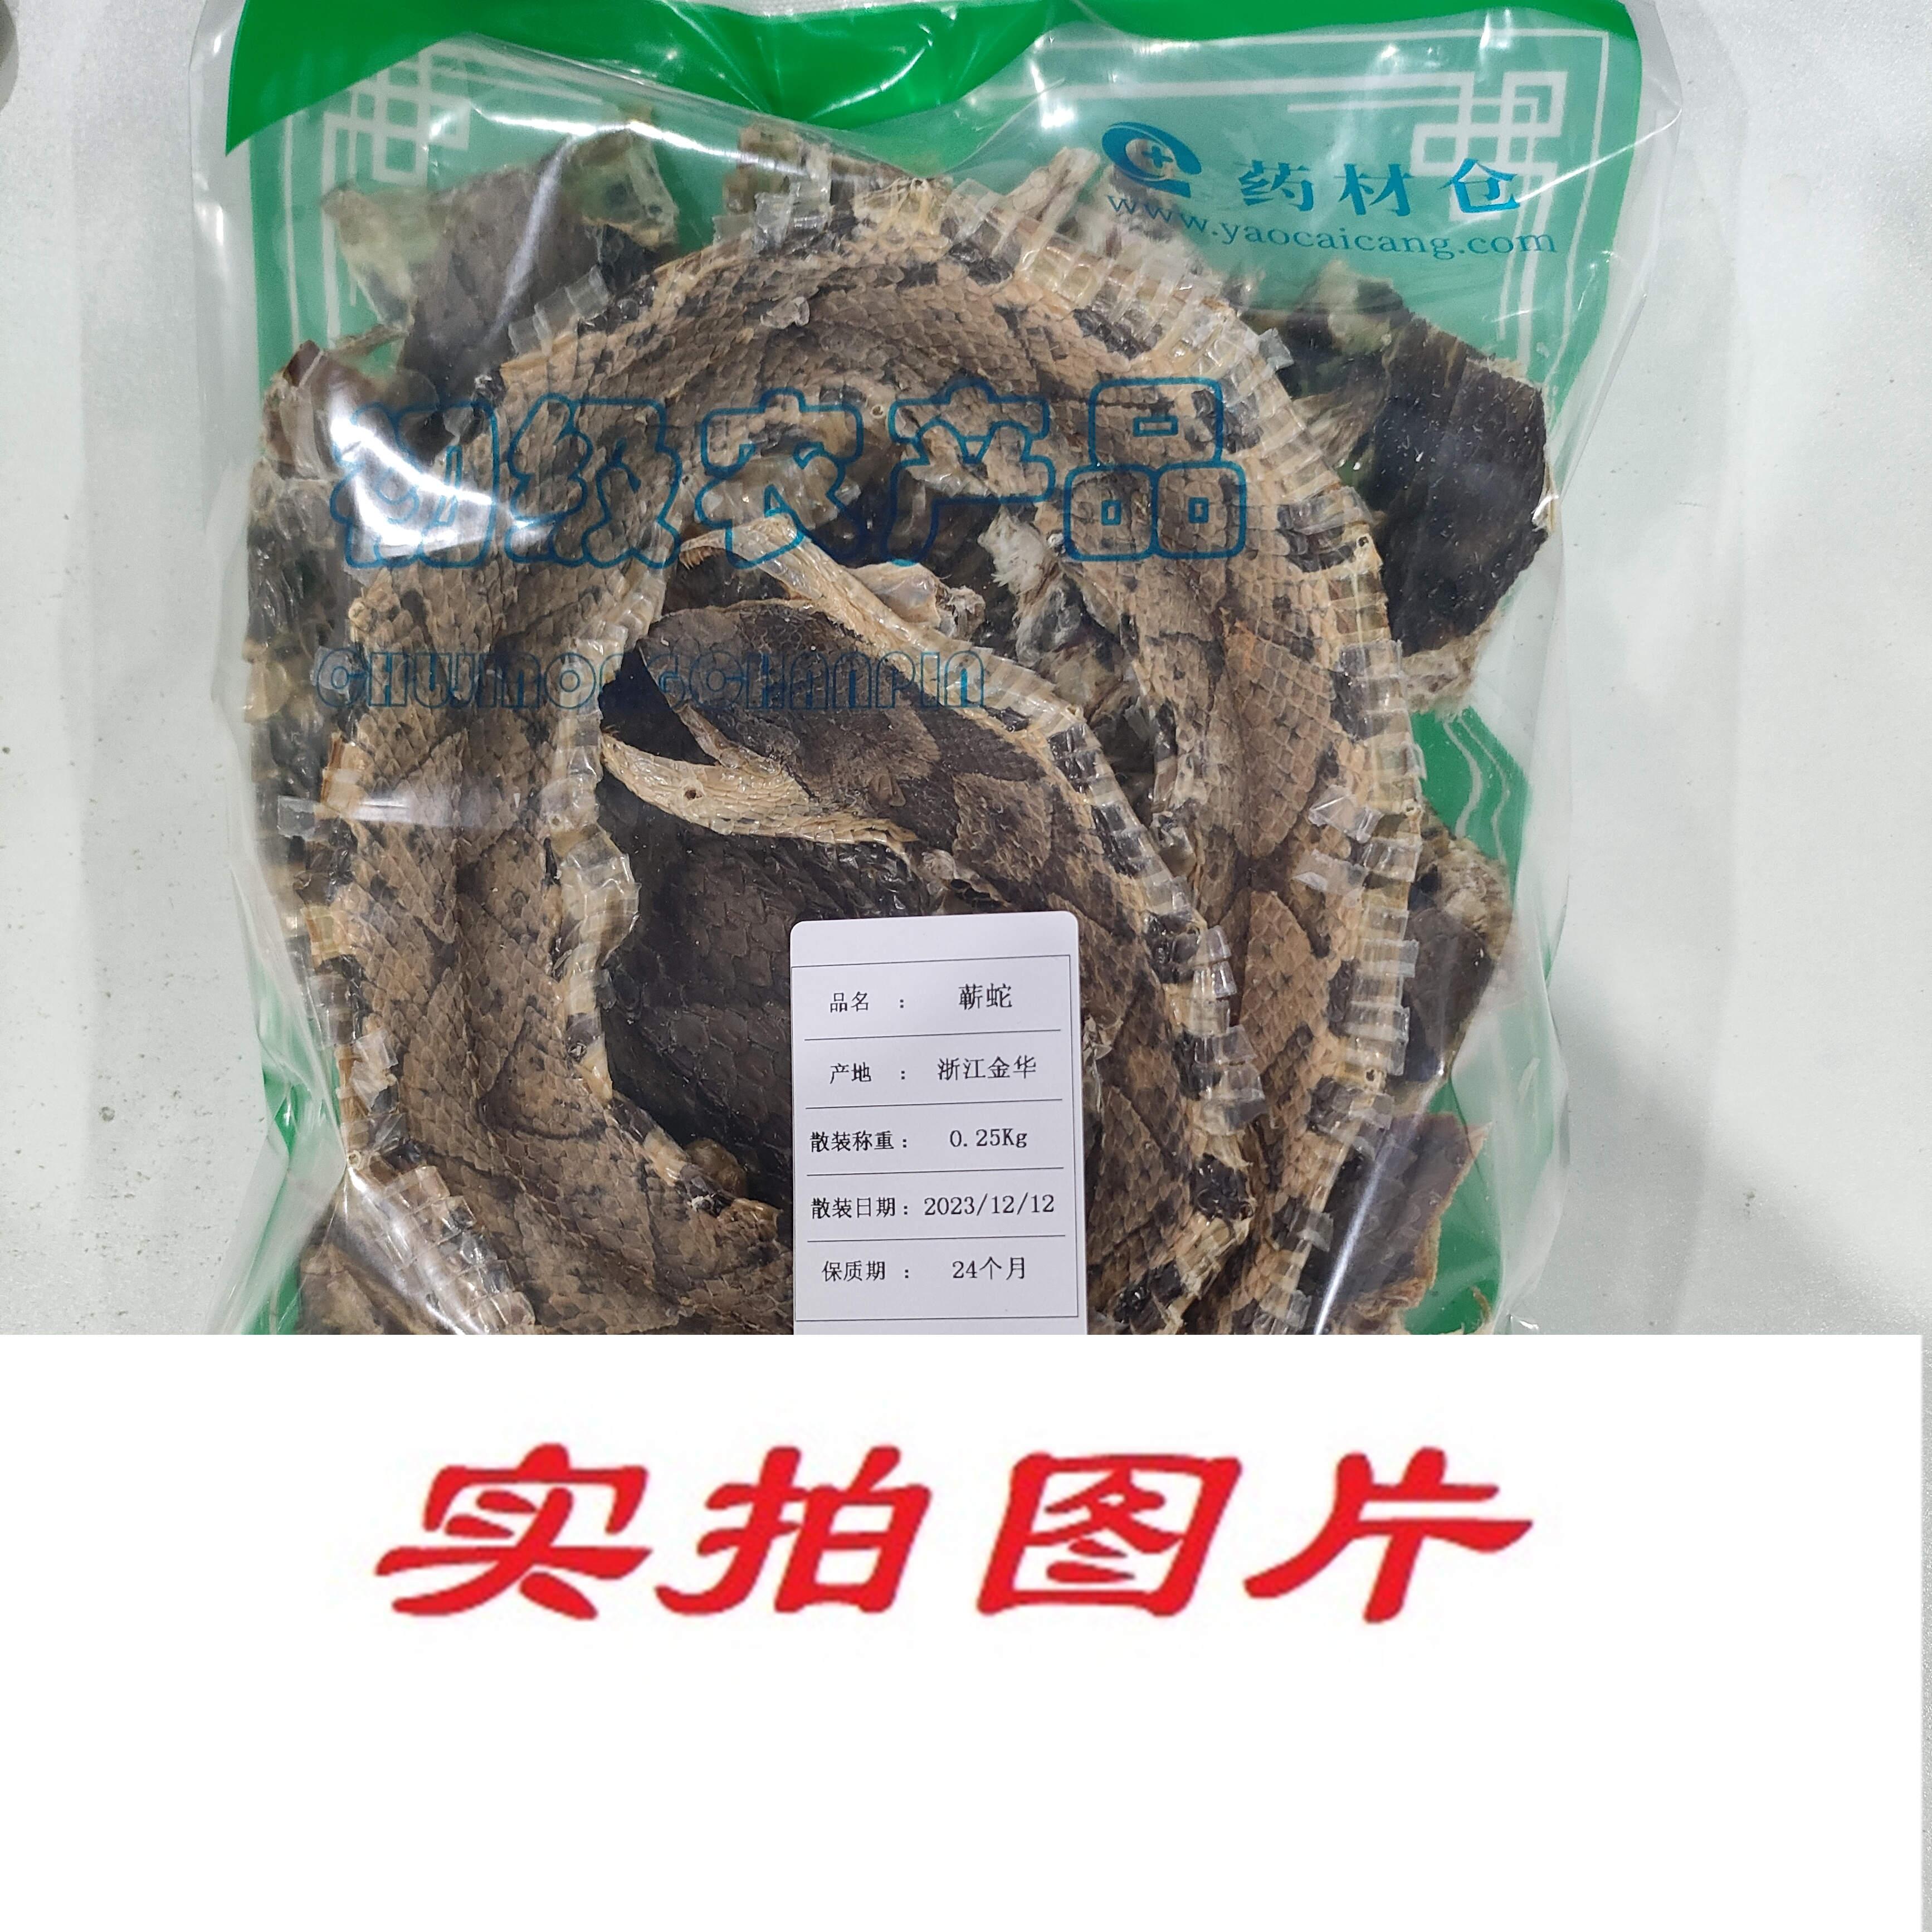 【】蕲蛇0.25kg-农副产品